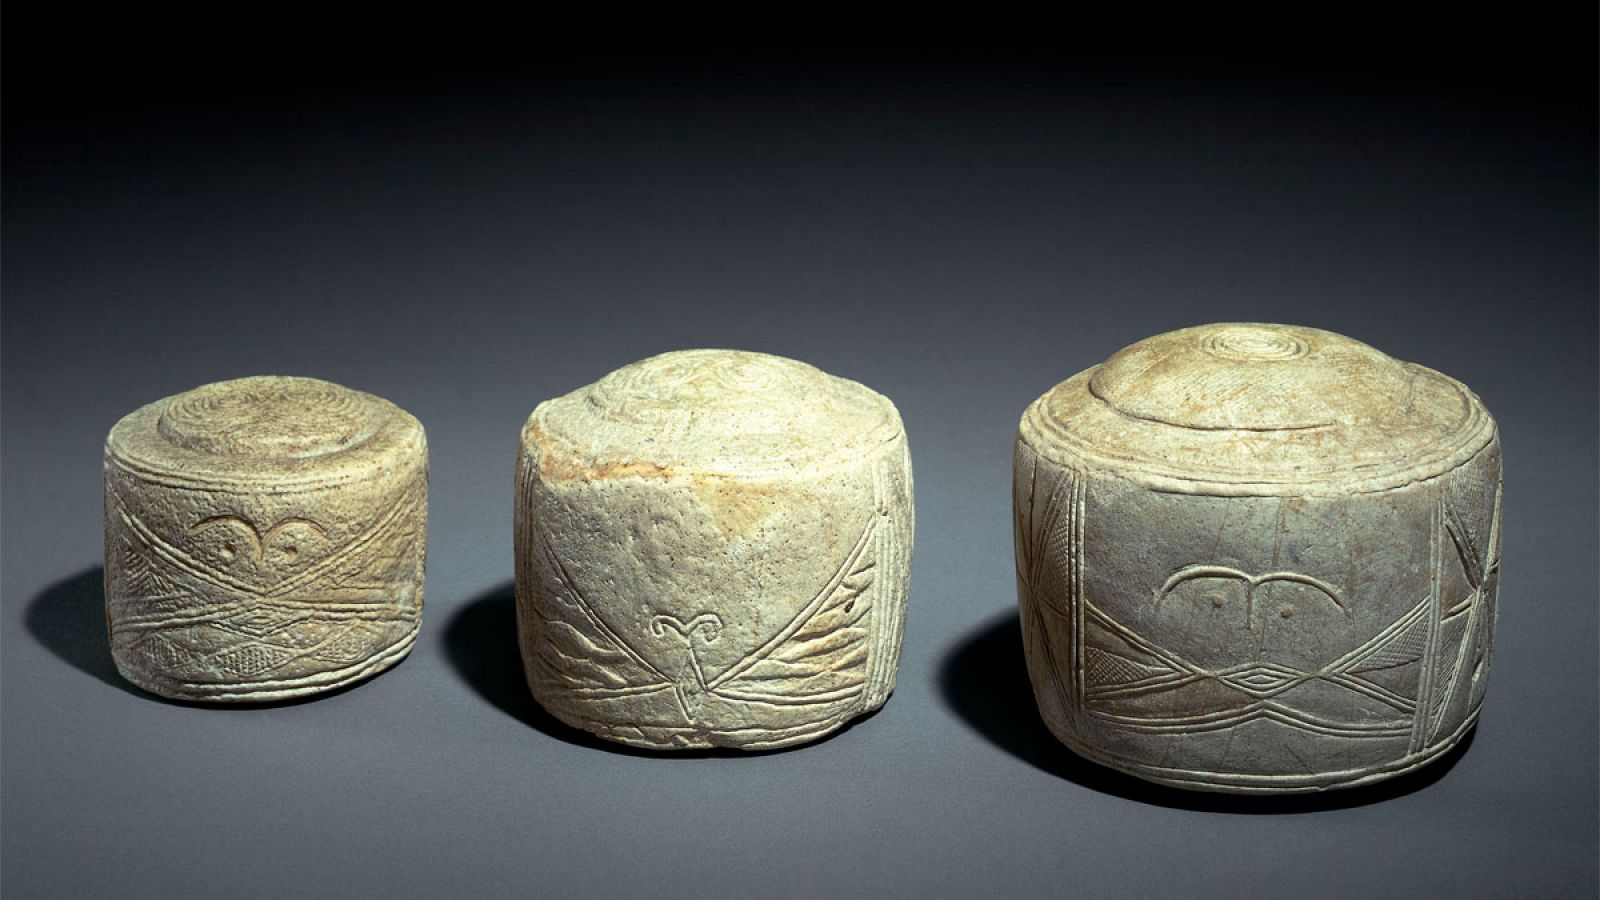 Los tambores de Folkton tienen alrededor de 5.000 años y fueron encontrados en antiguos sitios arqueológicos en Gran Bretaña.